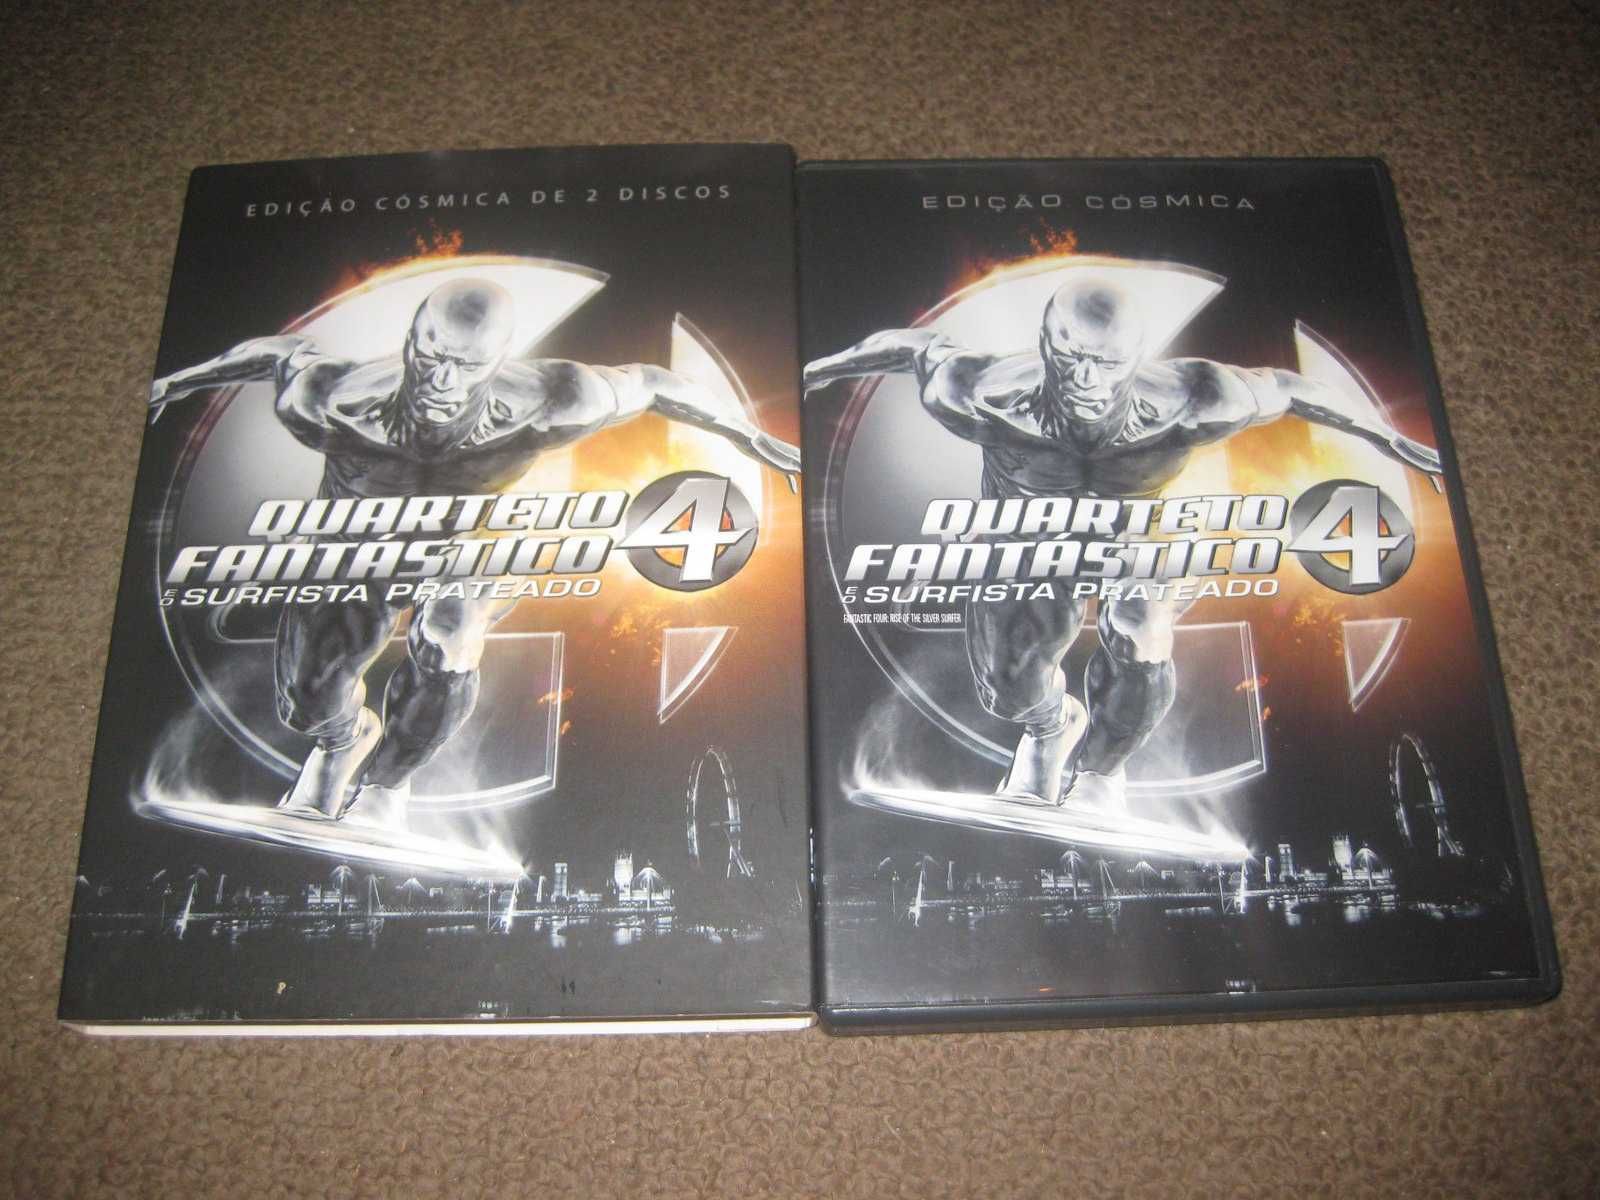 Colecção Completa DVD "Quarteto Fantástico" Edições Especiais 2 DVDs